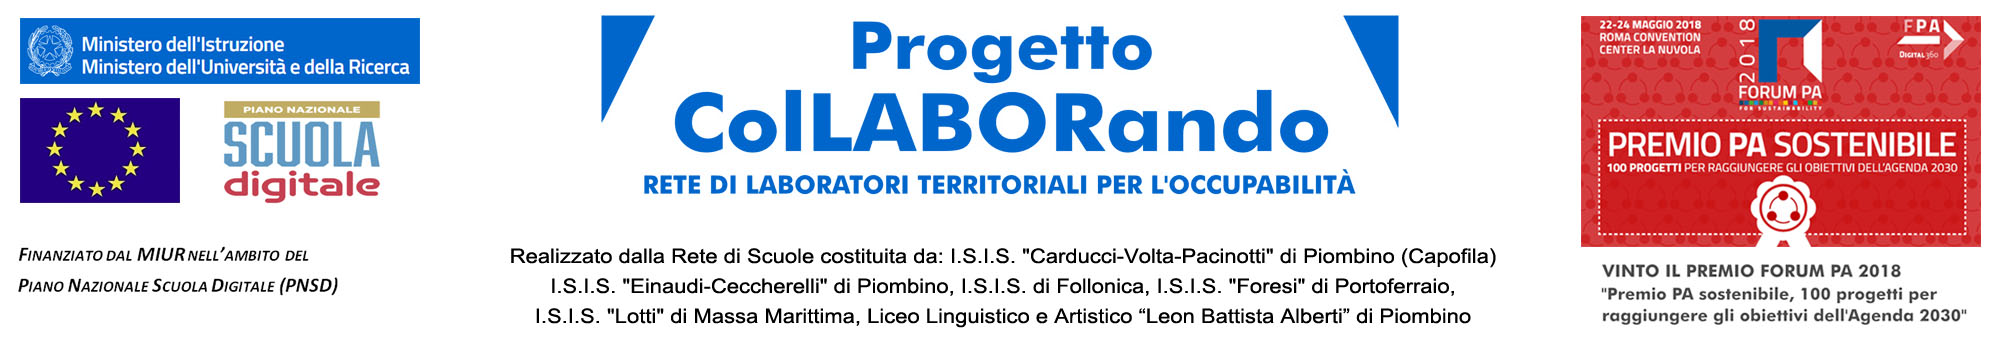 Progetto Collaborando - Scuola capofila: Istituto di Istruzione Superiore Carducci - Volta - Pacinotti di Piombino (LI)